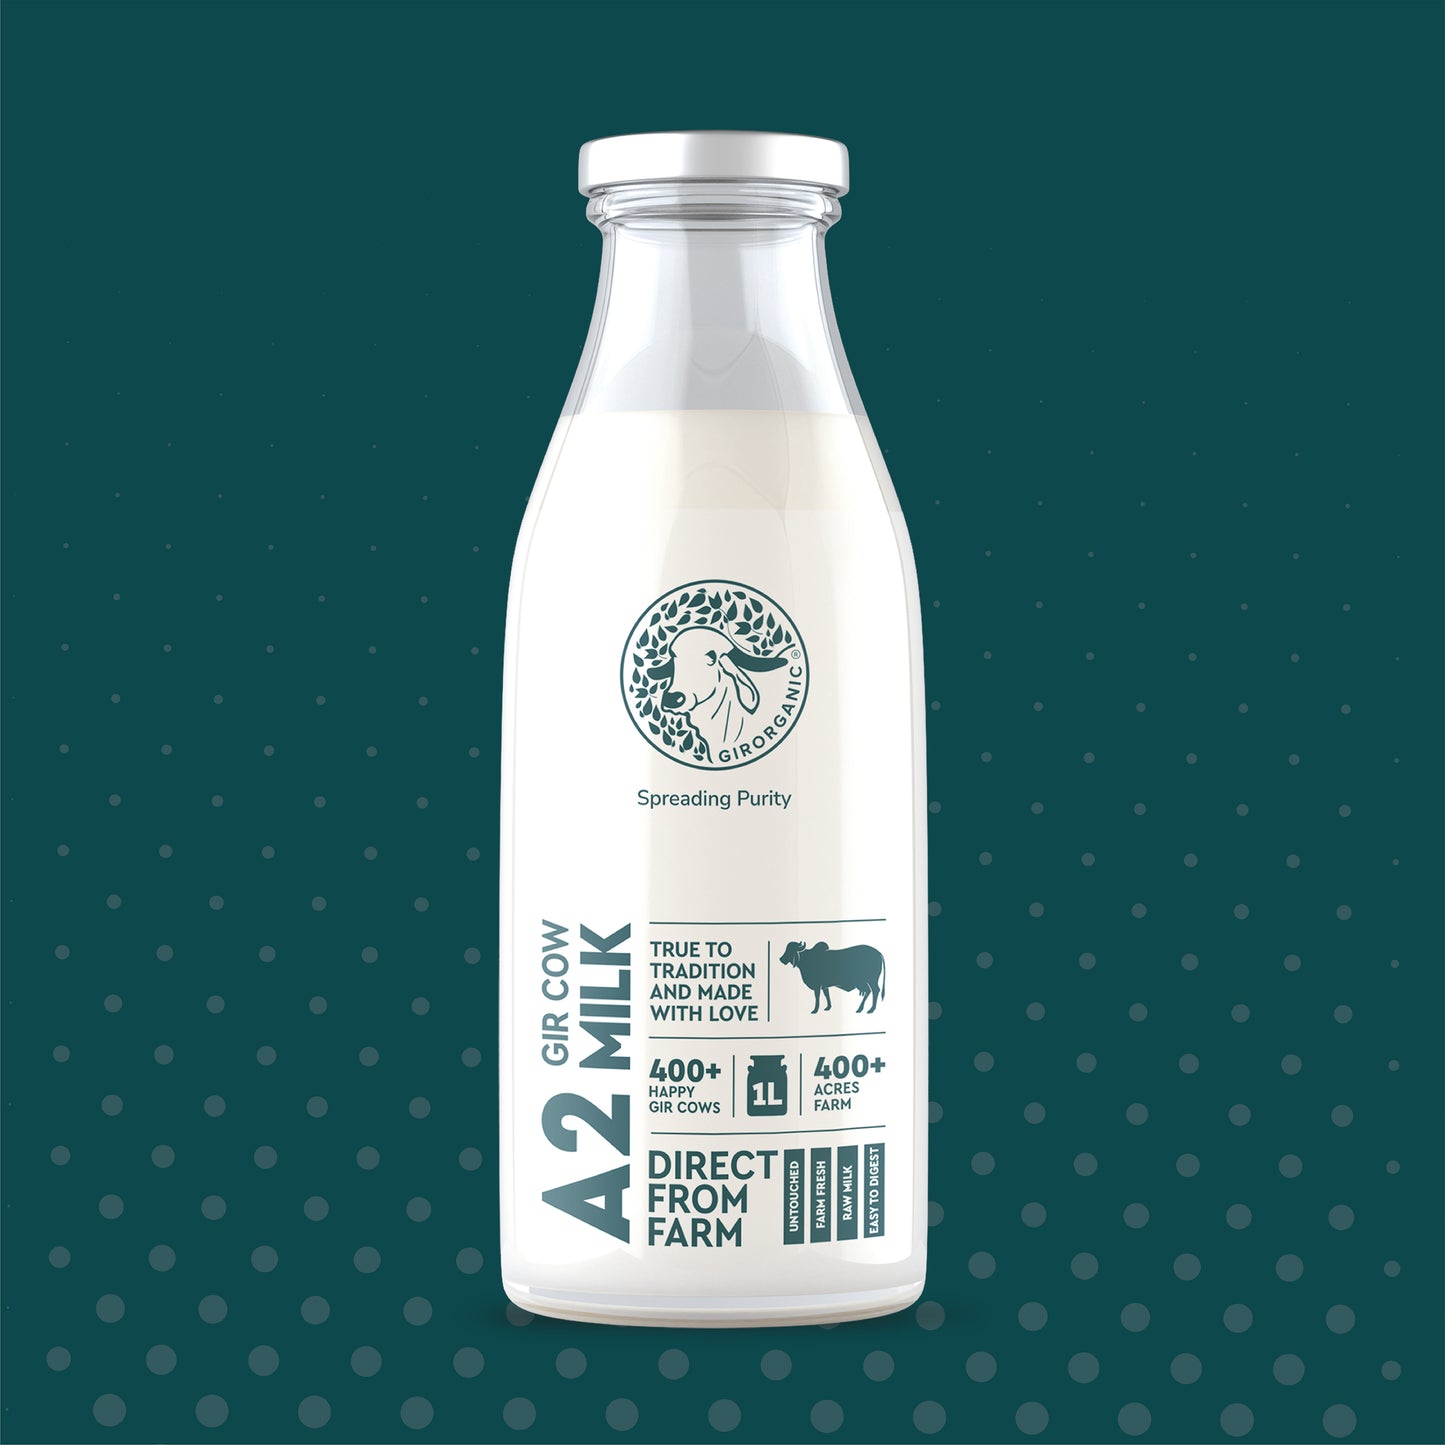 A2 Gir Cow Milk - 1 Litre/day